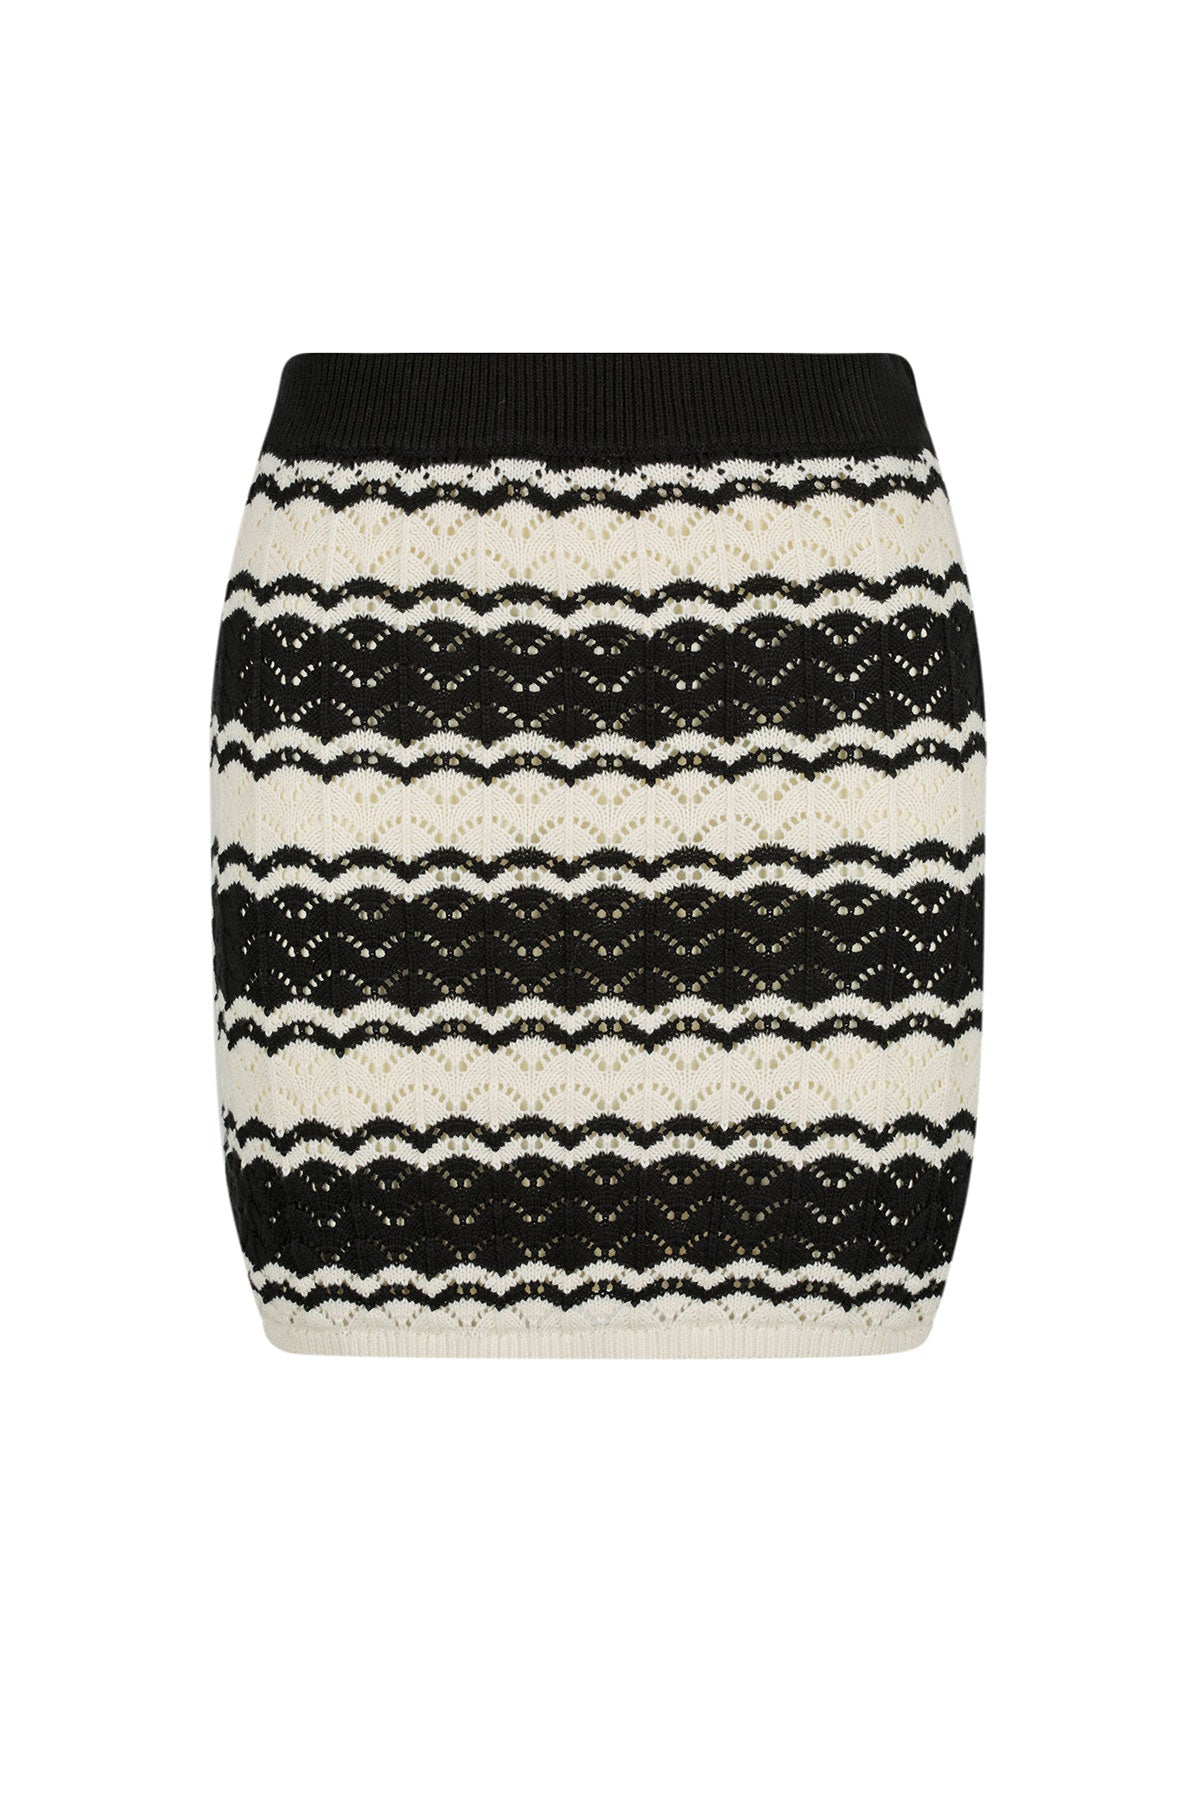 Shona Joy | Ravello Crochet Mini Skirt